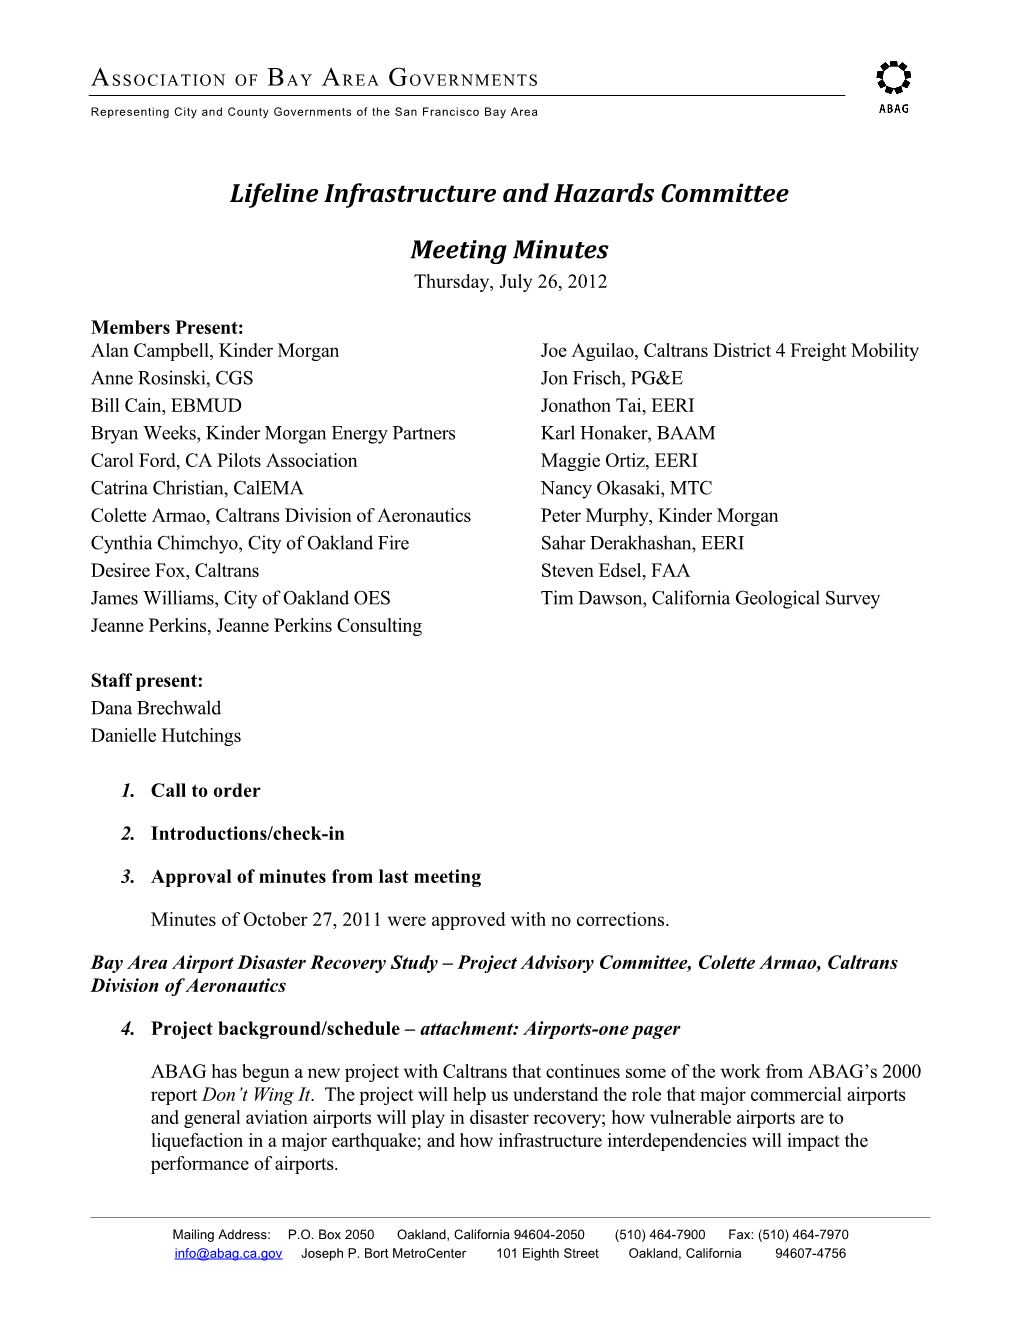 Lifeline Infrastructure and Hazards Committee